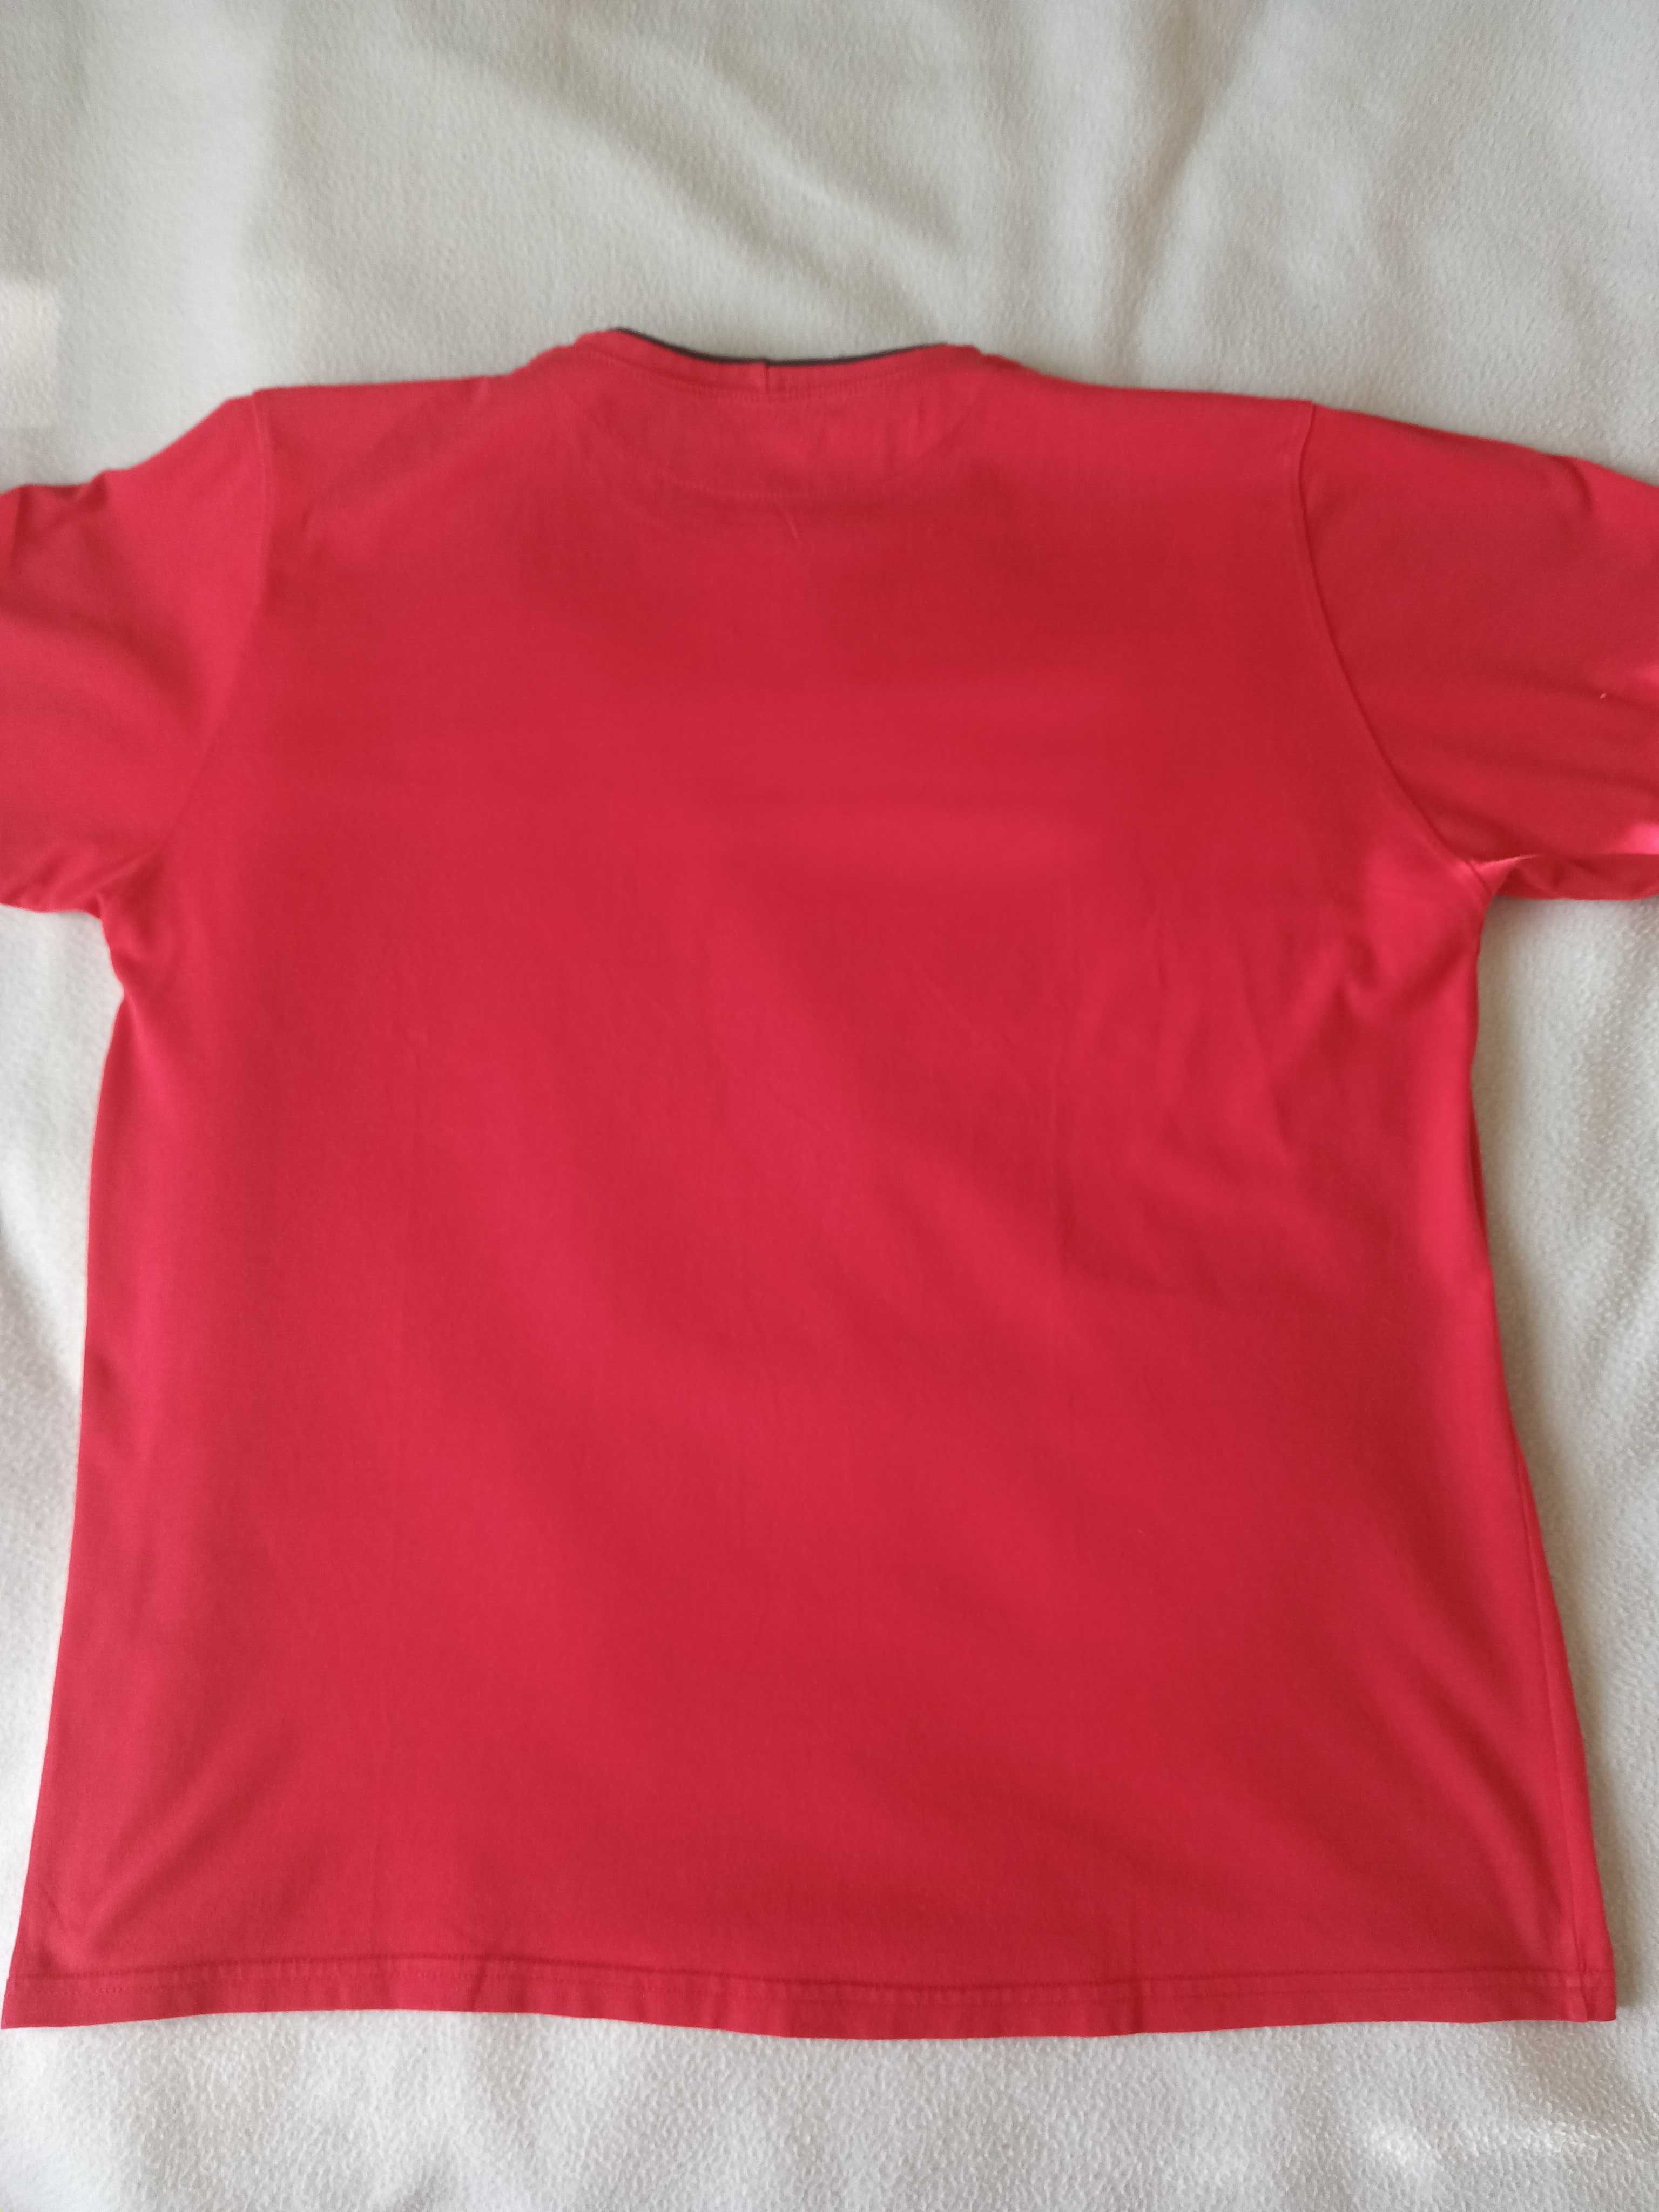 T-shirt męski czerwony krótki rękaw L/XL